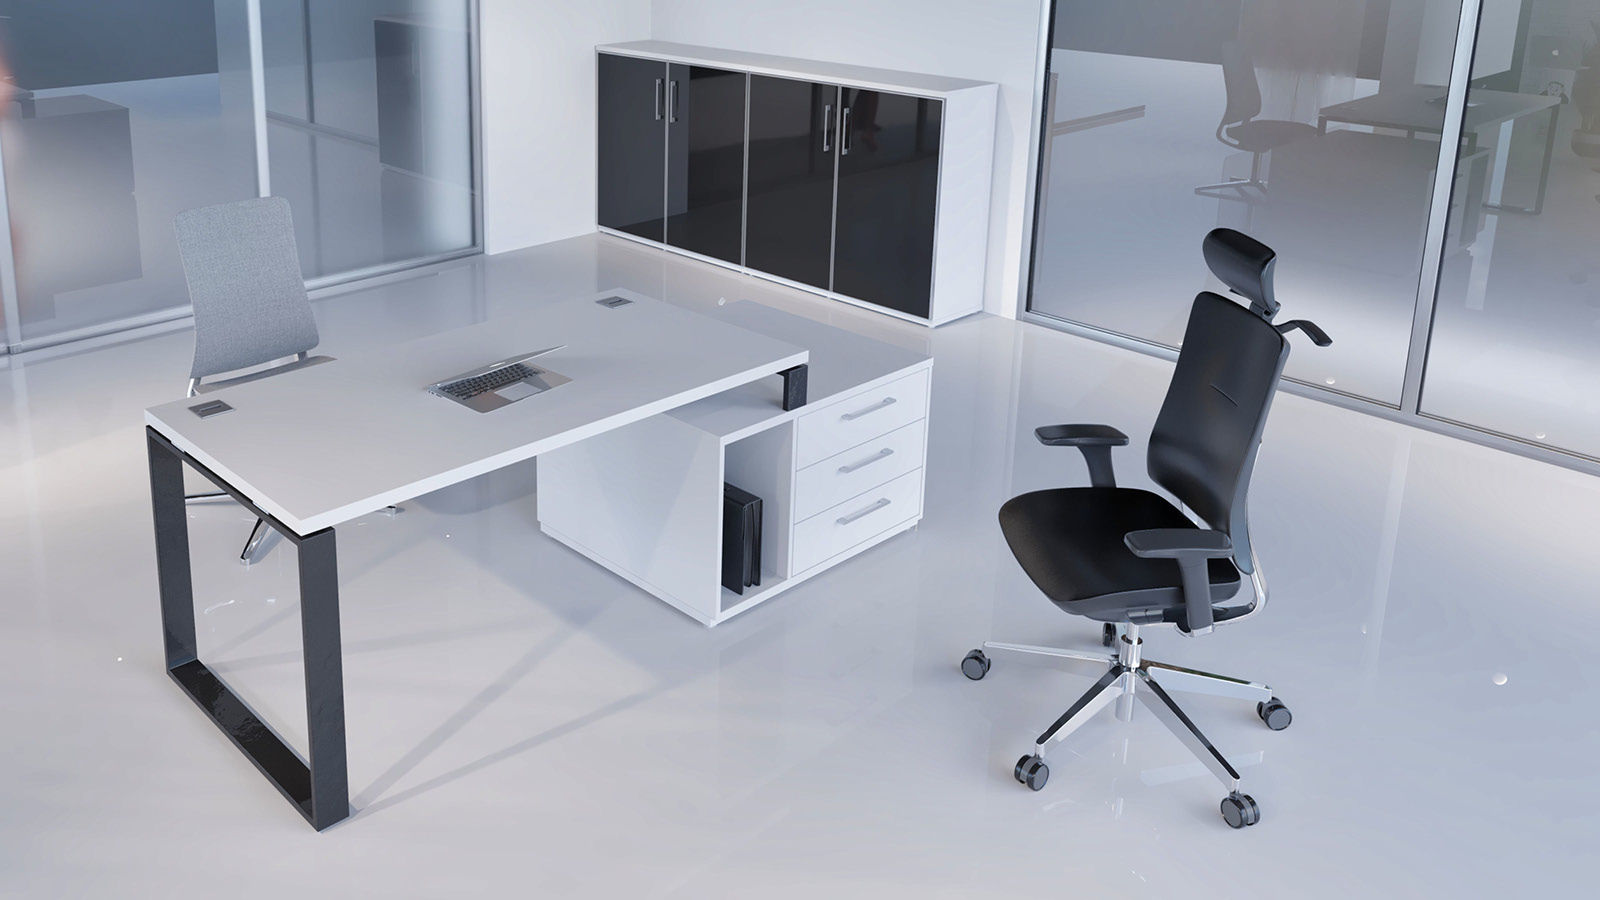 Stanowisko pracy na małej przestrzeni - meble biało-czarne, obejmujące biurko oparte na komodzie, niską szafę oraz krzesła.